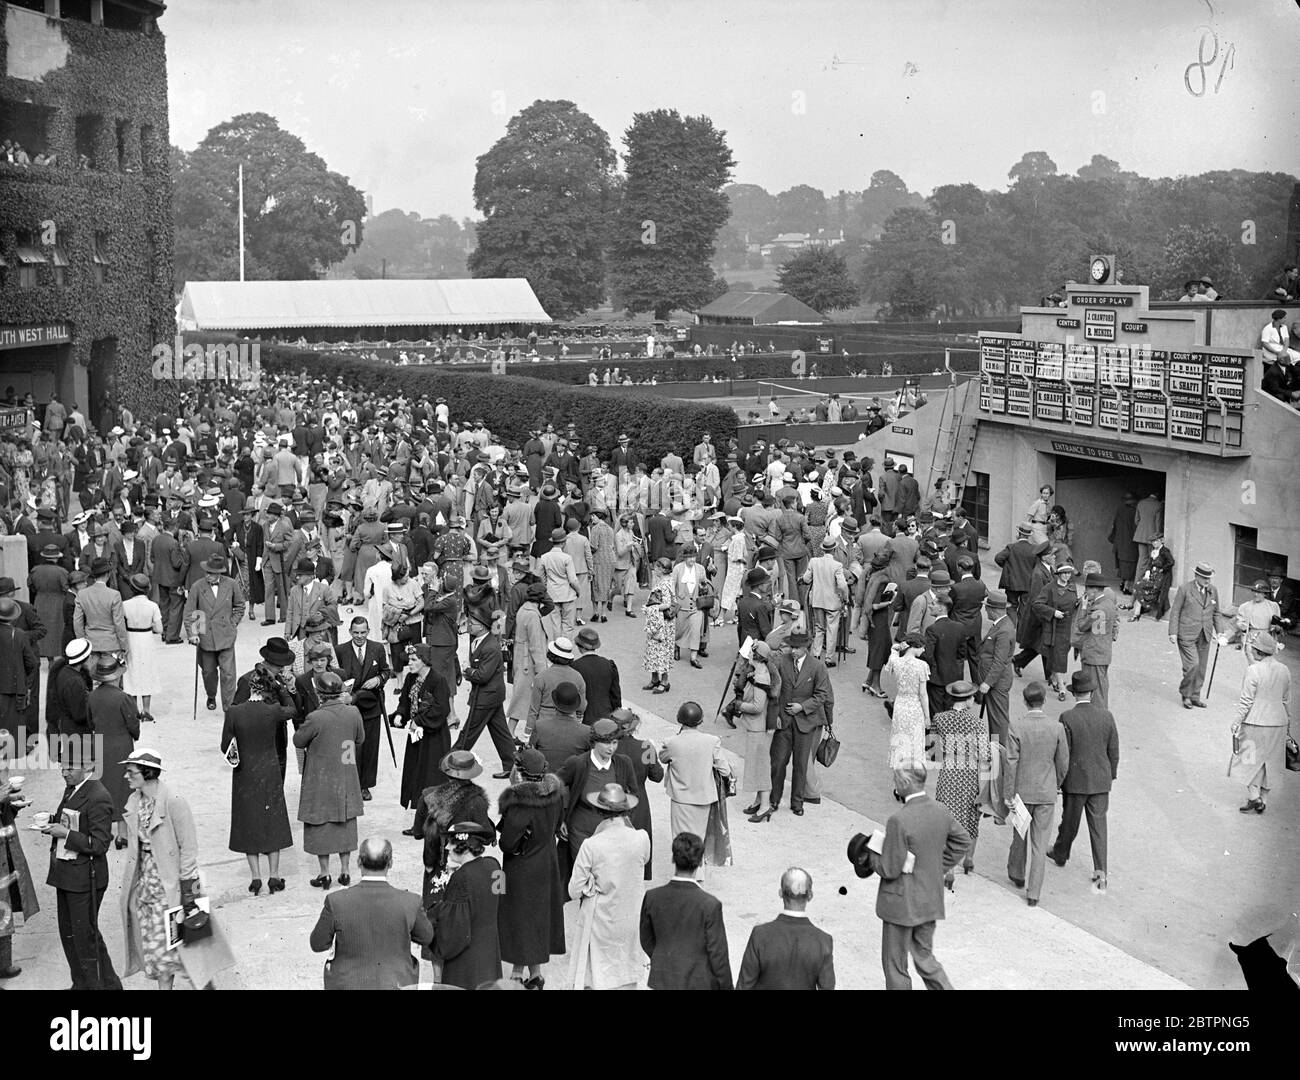 Public d'ouverture à Wimbledon. L'été, une foule importante se fait affluent sur les courts de Wimbledon pour le jour d'ouverture des championnats d'Angleterre. Des spectacles photo, une vue générale de la foule et de jouer le jour d'ouverture à Wimbledon. 21 juin 1937 Banque D'Images